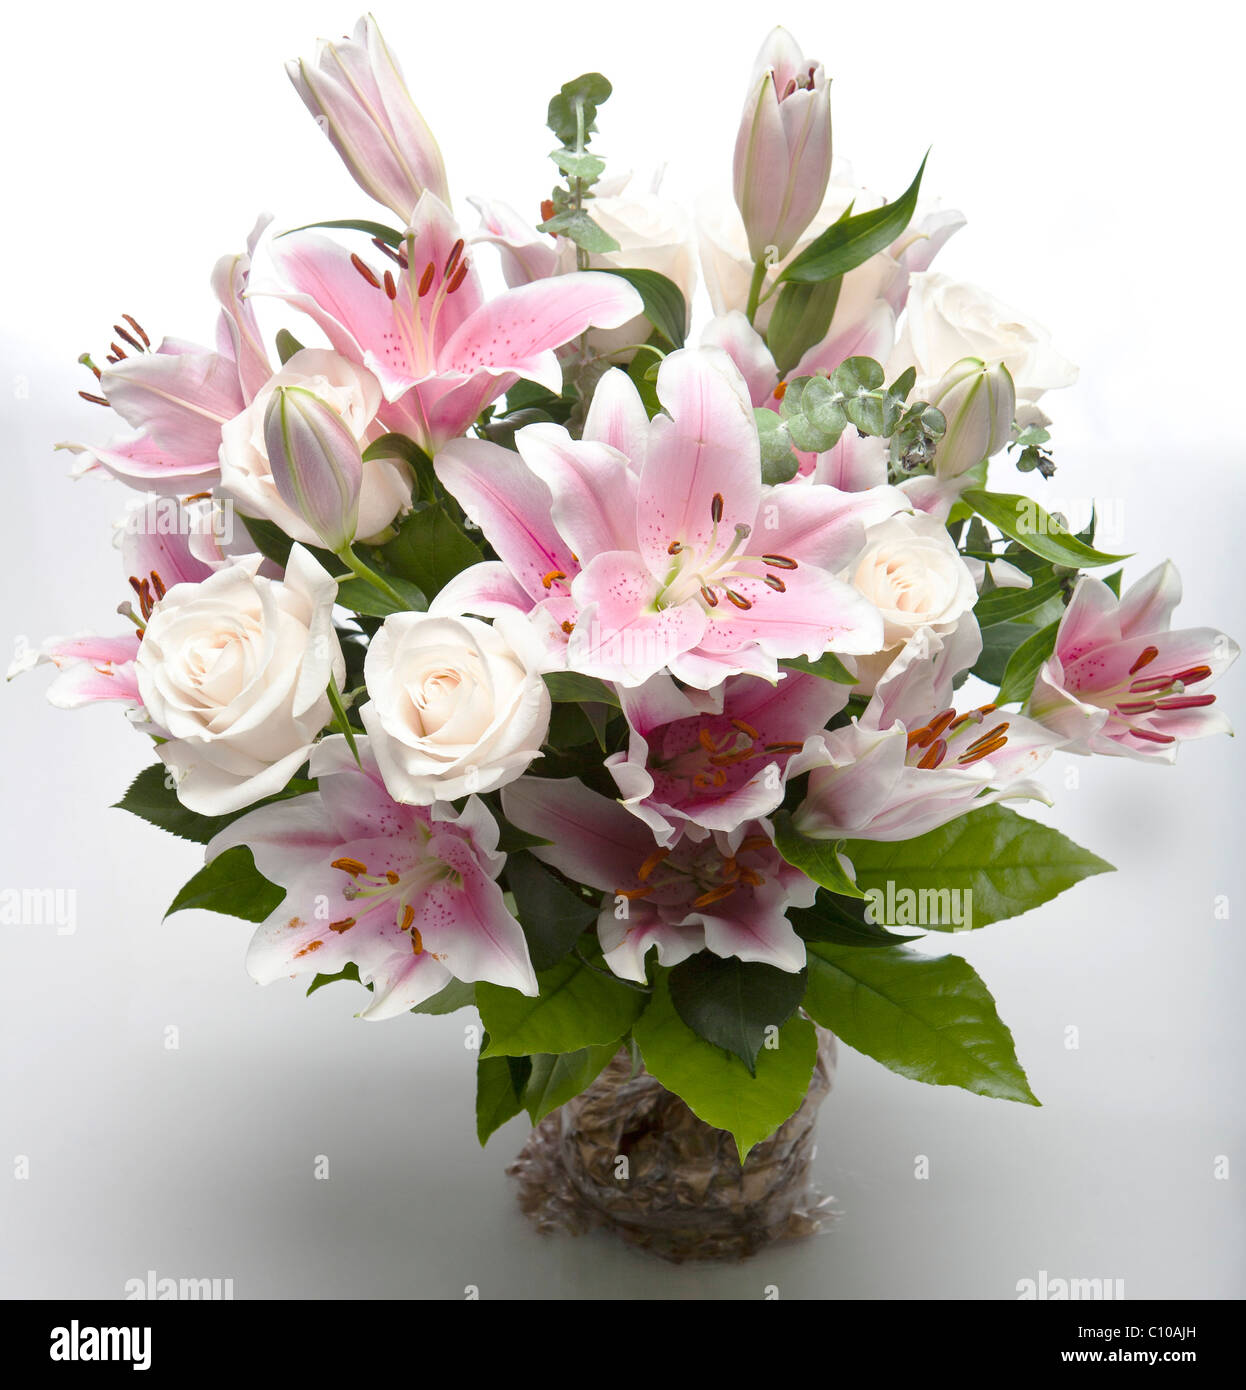 Nahaufnahme von einem Blumenstrauß, einschließlich rosa Lilien Ad weißen Rosen. Stockfoto